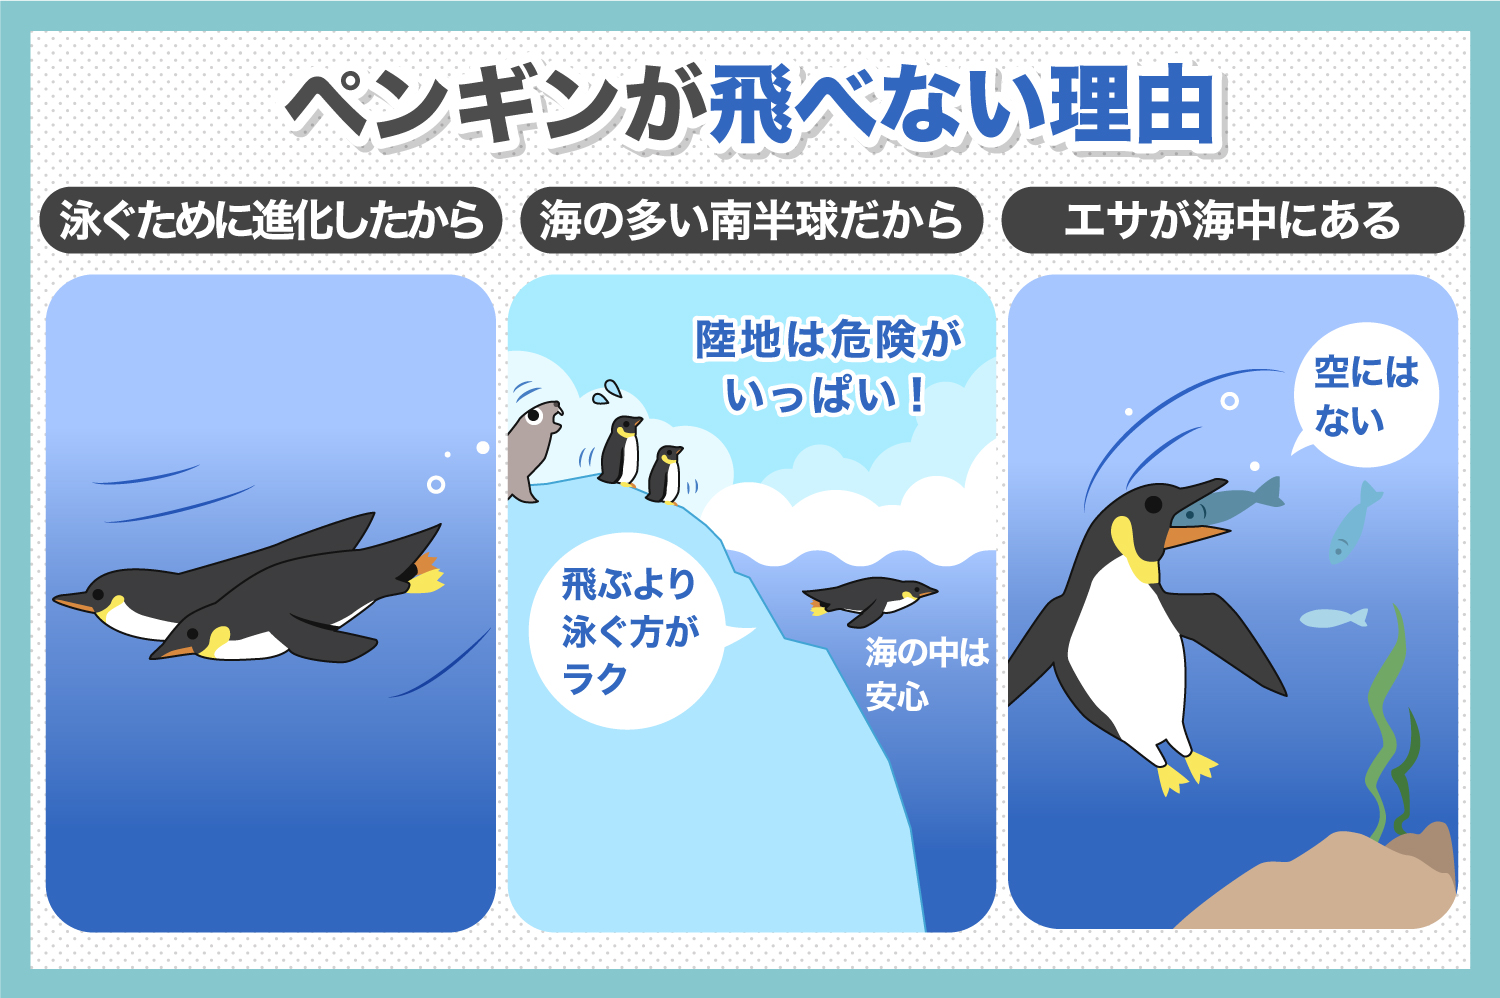 ペンギンが飛べない理由についてやさしく解説 いきふぉめーしょん